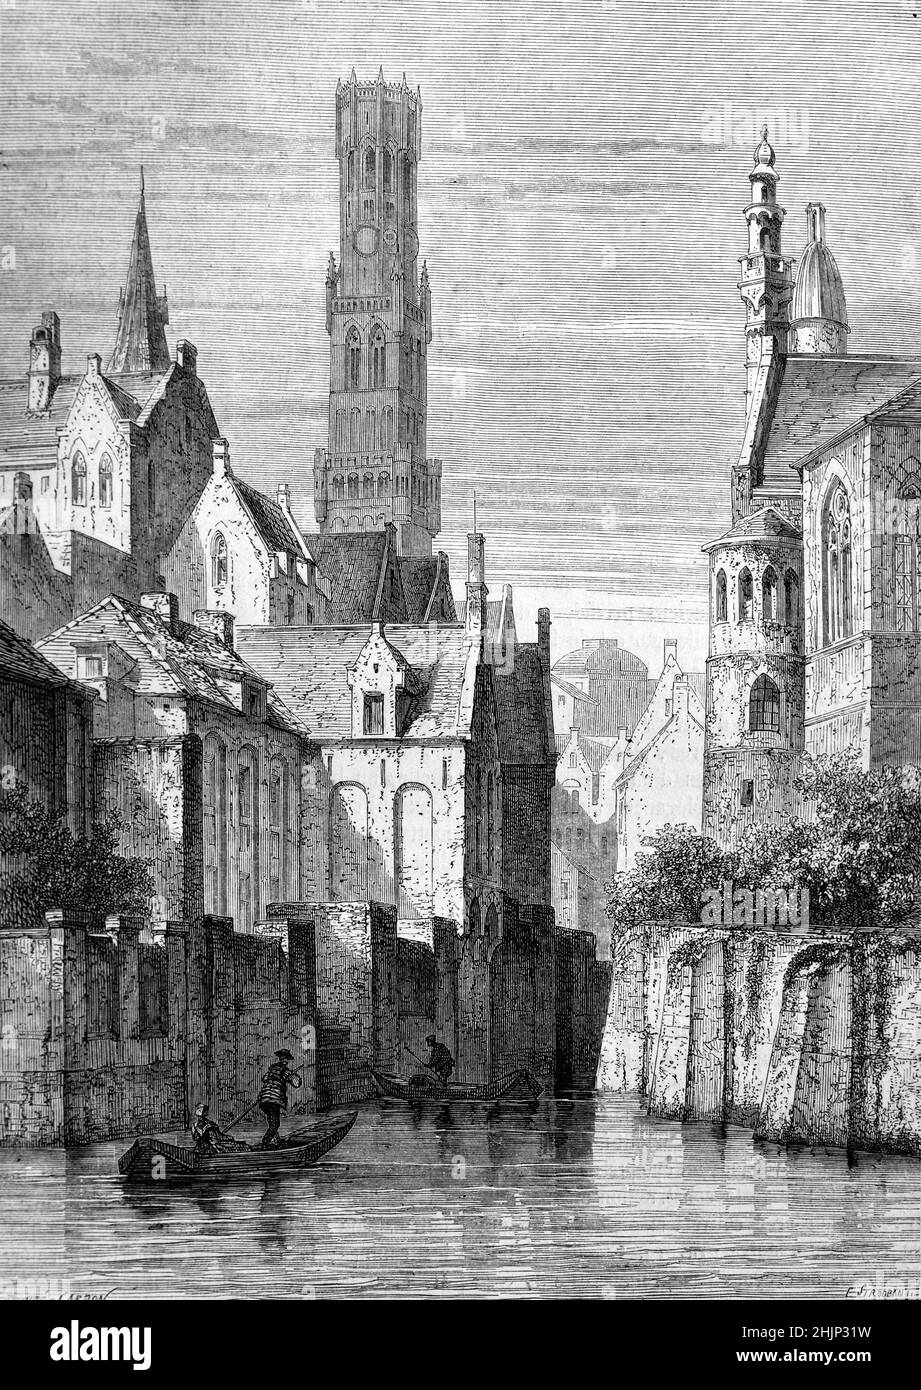 Vieille ville ou quartier historique de Bruges avec la rivière Reie ou le canal et le beffroi de Bruges Belgique.Illustration ancienne ou gravure 1865 Banque D'Images